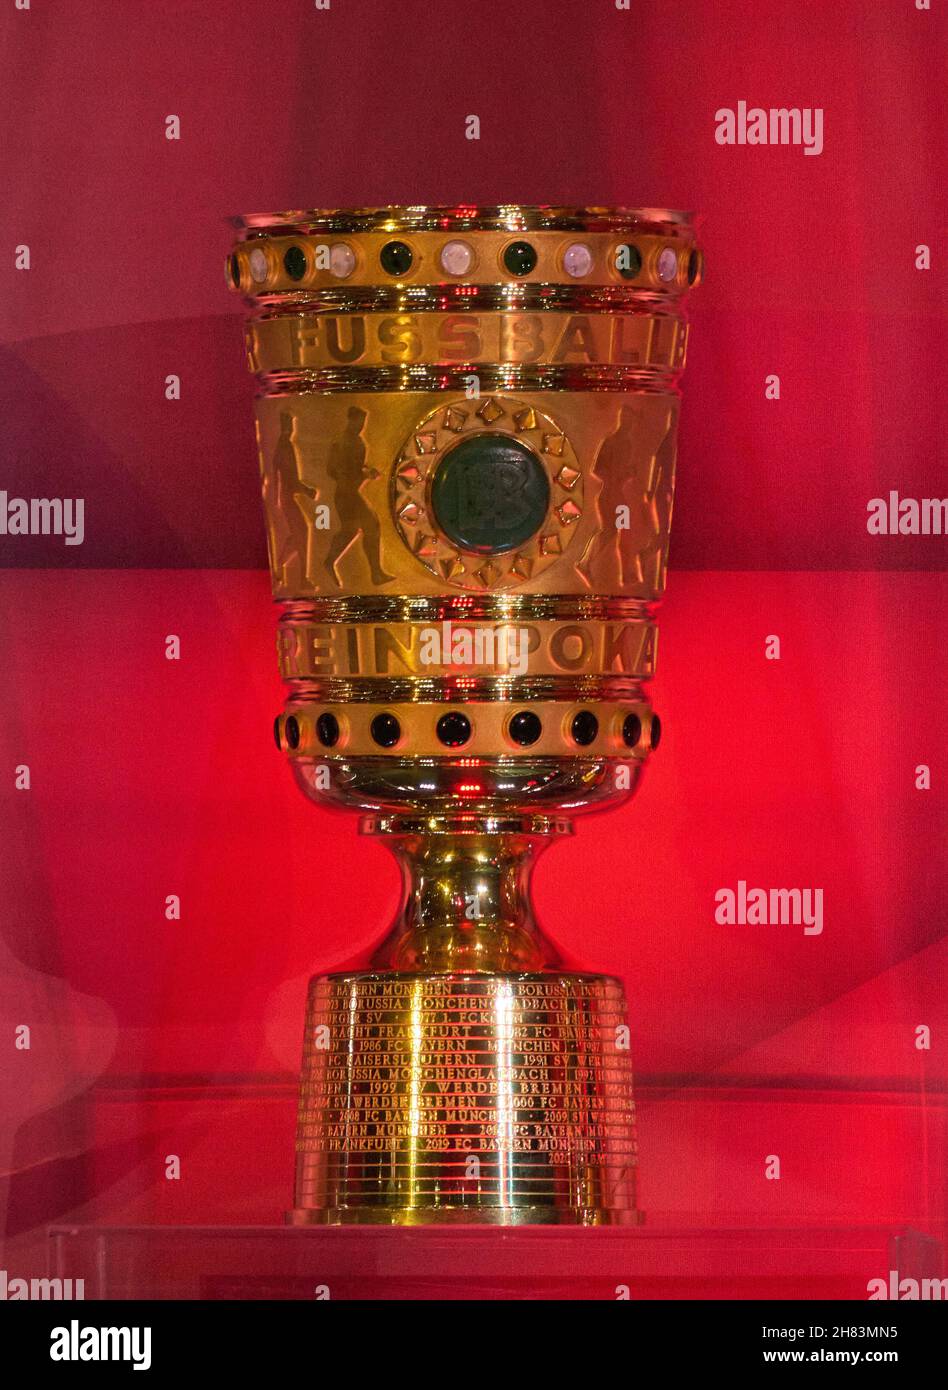 Alle wichtigen Pokale: DFB-Pokal auf der Hauptversammlung des FC BAYERN  MÜNCHEN im Audi Dome München, 25. November 2021, Saison 2021/2022, © Peter  Schatz / Alamy Live News Stockfotografie - Alamy